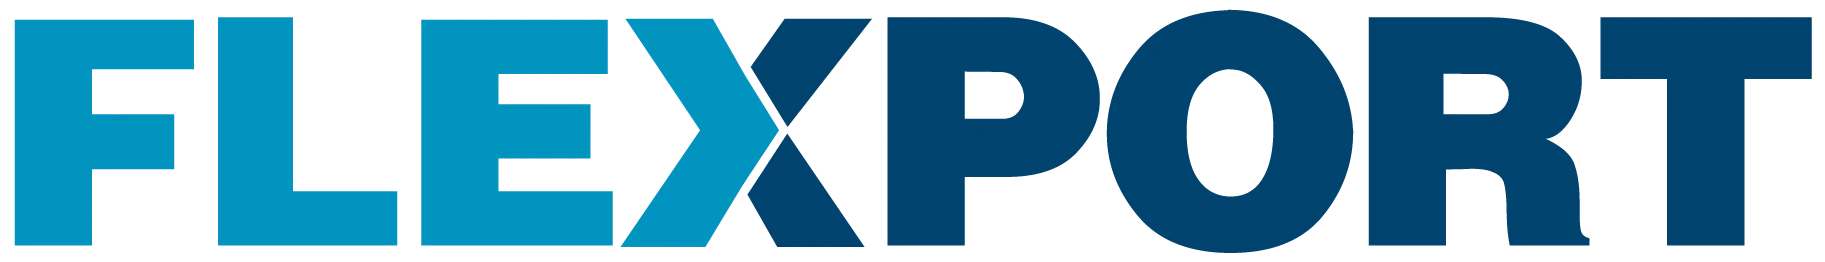 Flexport_logo.5c6ec1ab4dbda-1